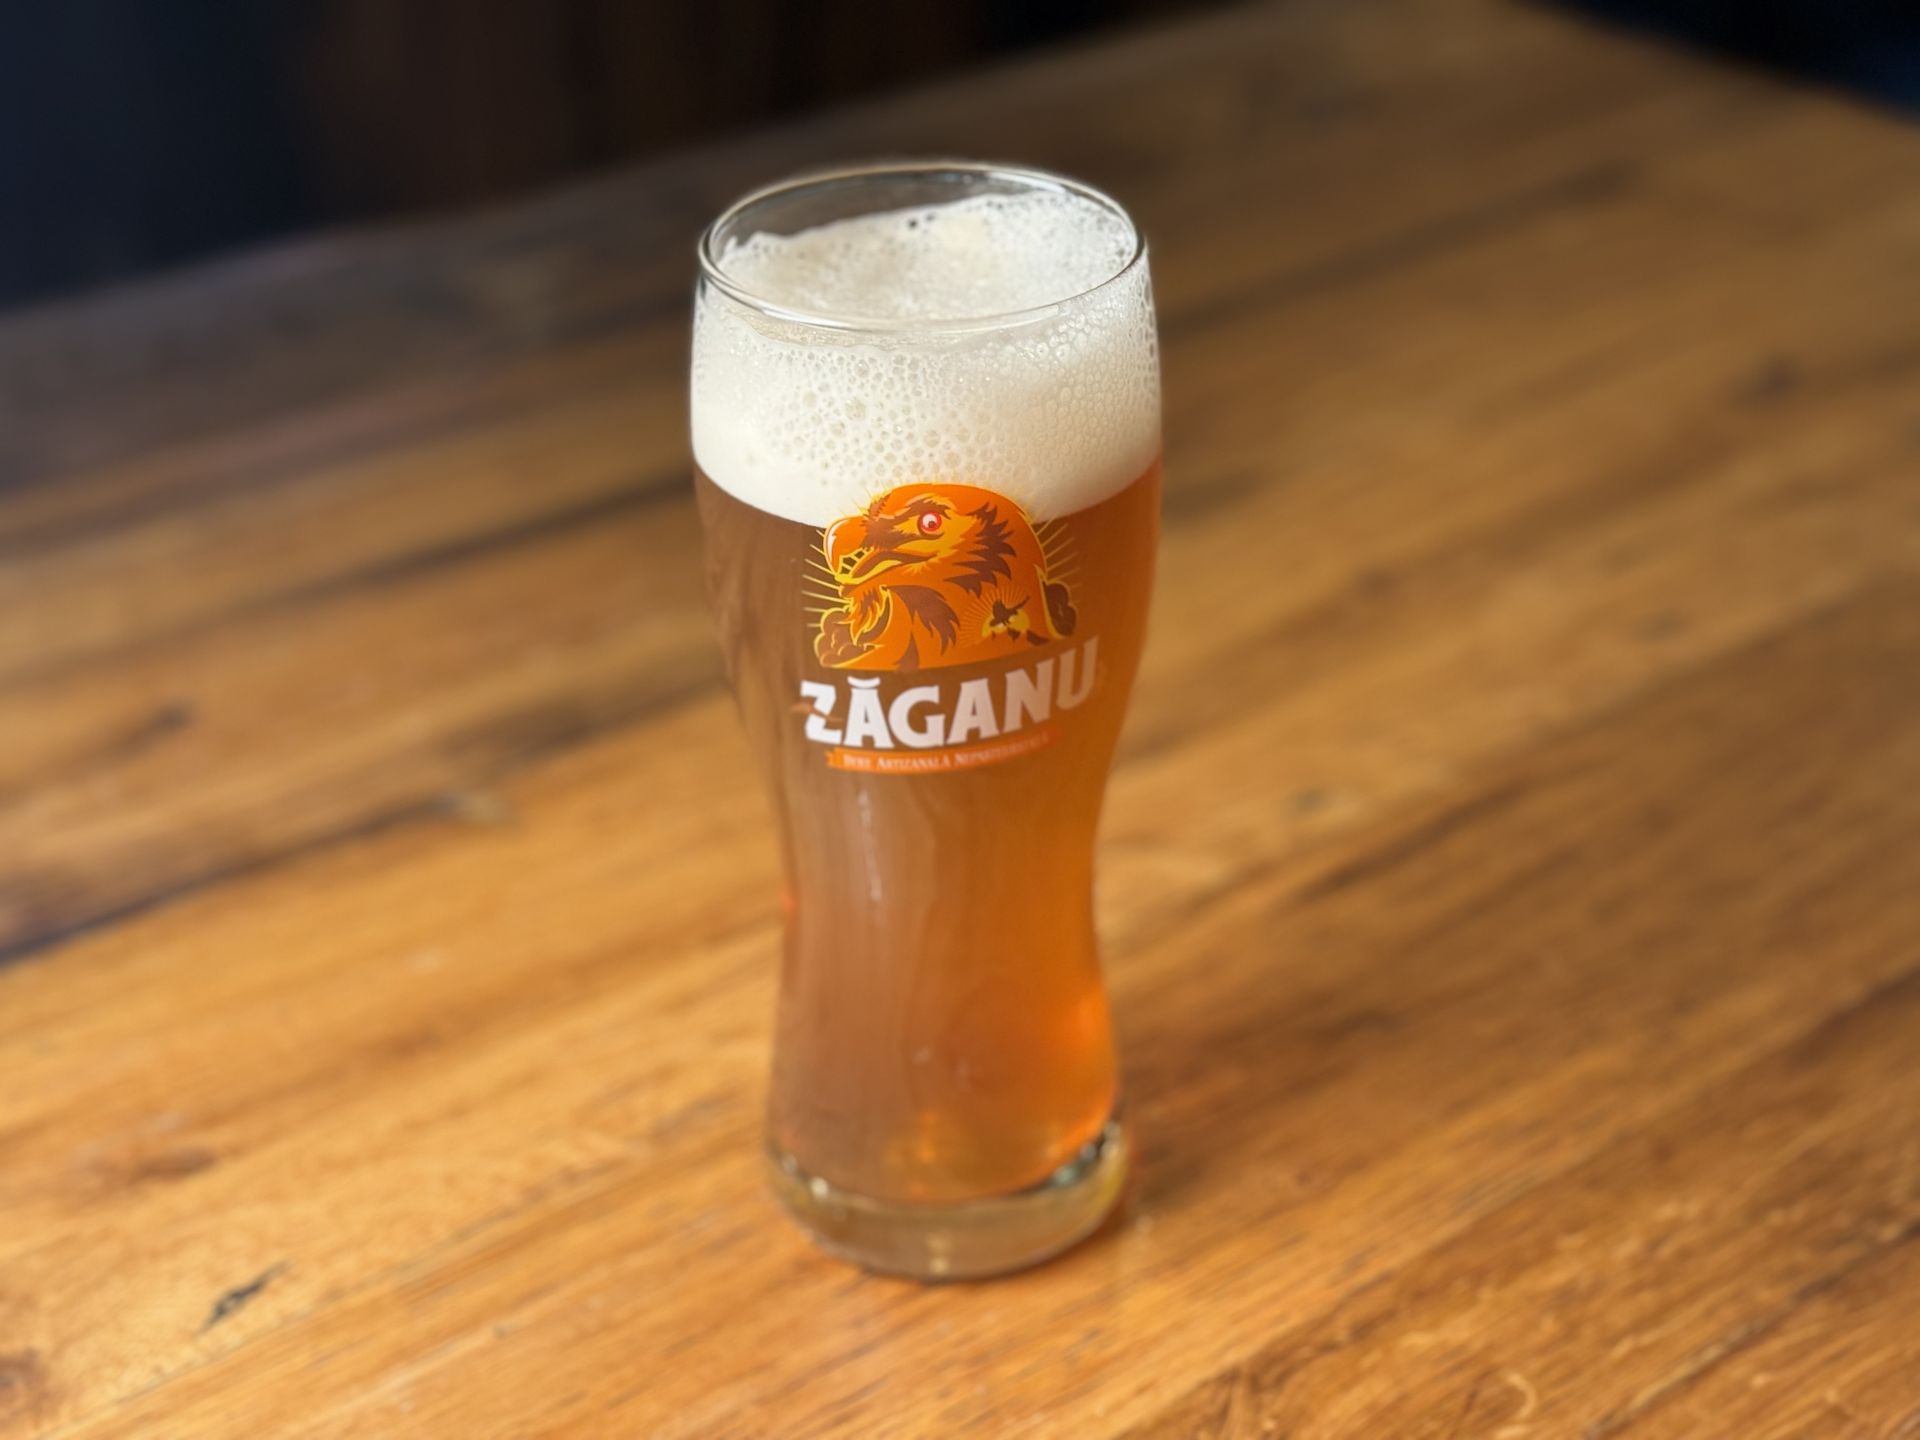 Zăganu Blondă Pilsner, craft beer, draught